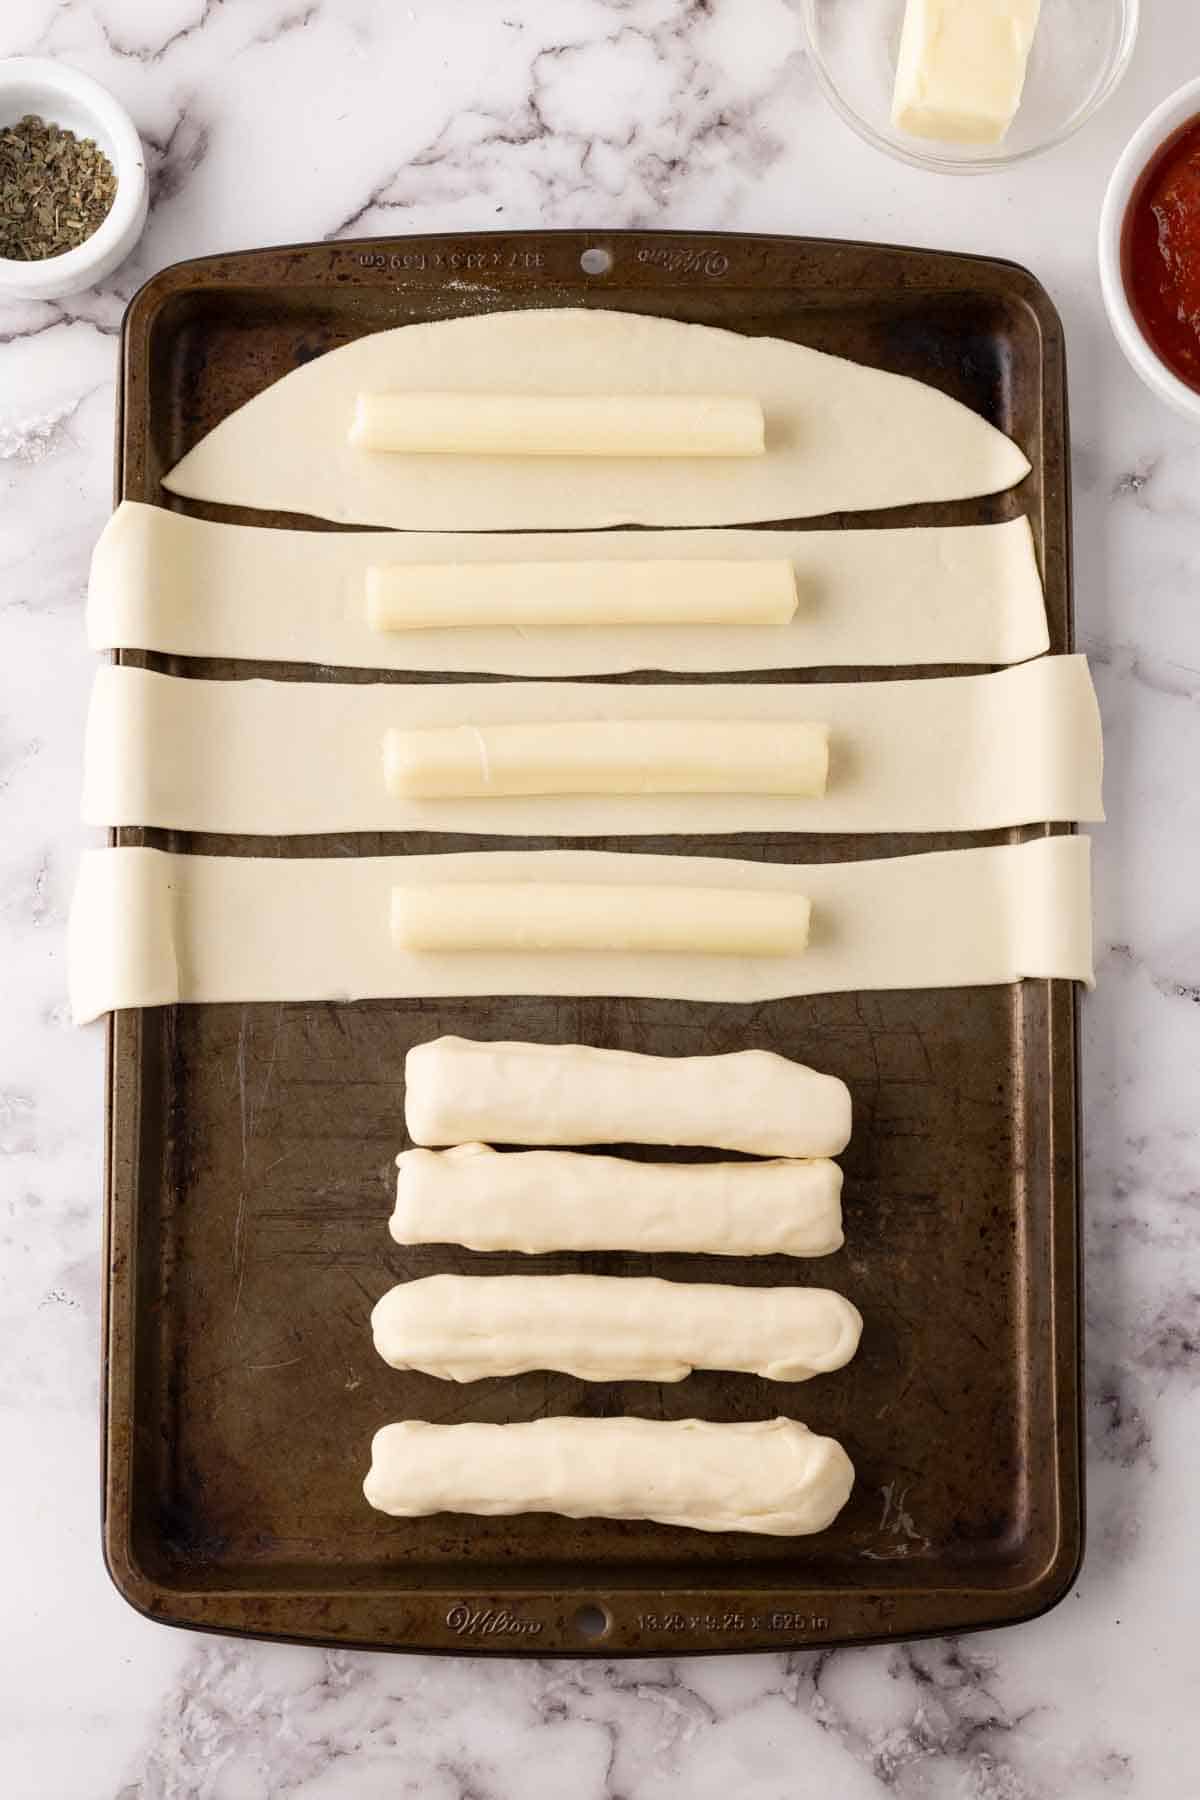 bosco sticks recipe in progress on a sheet pan.